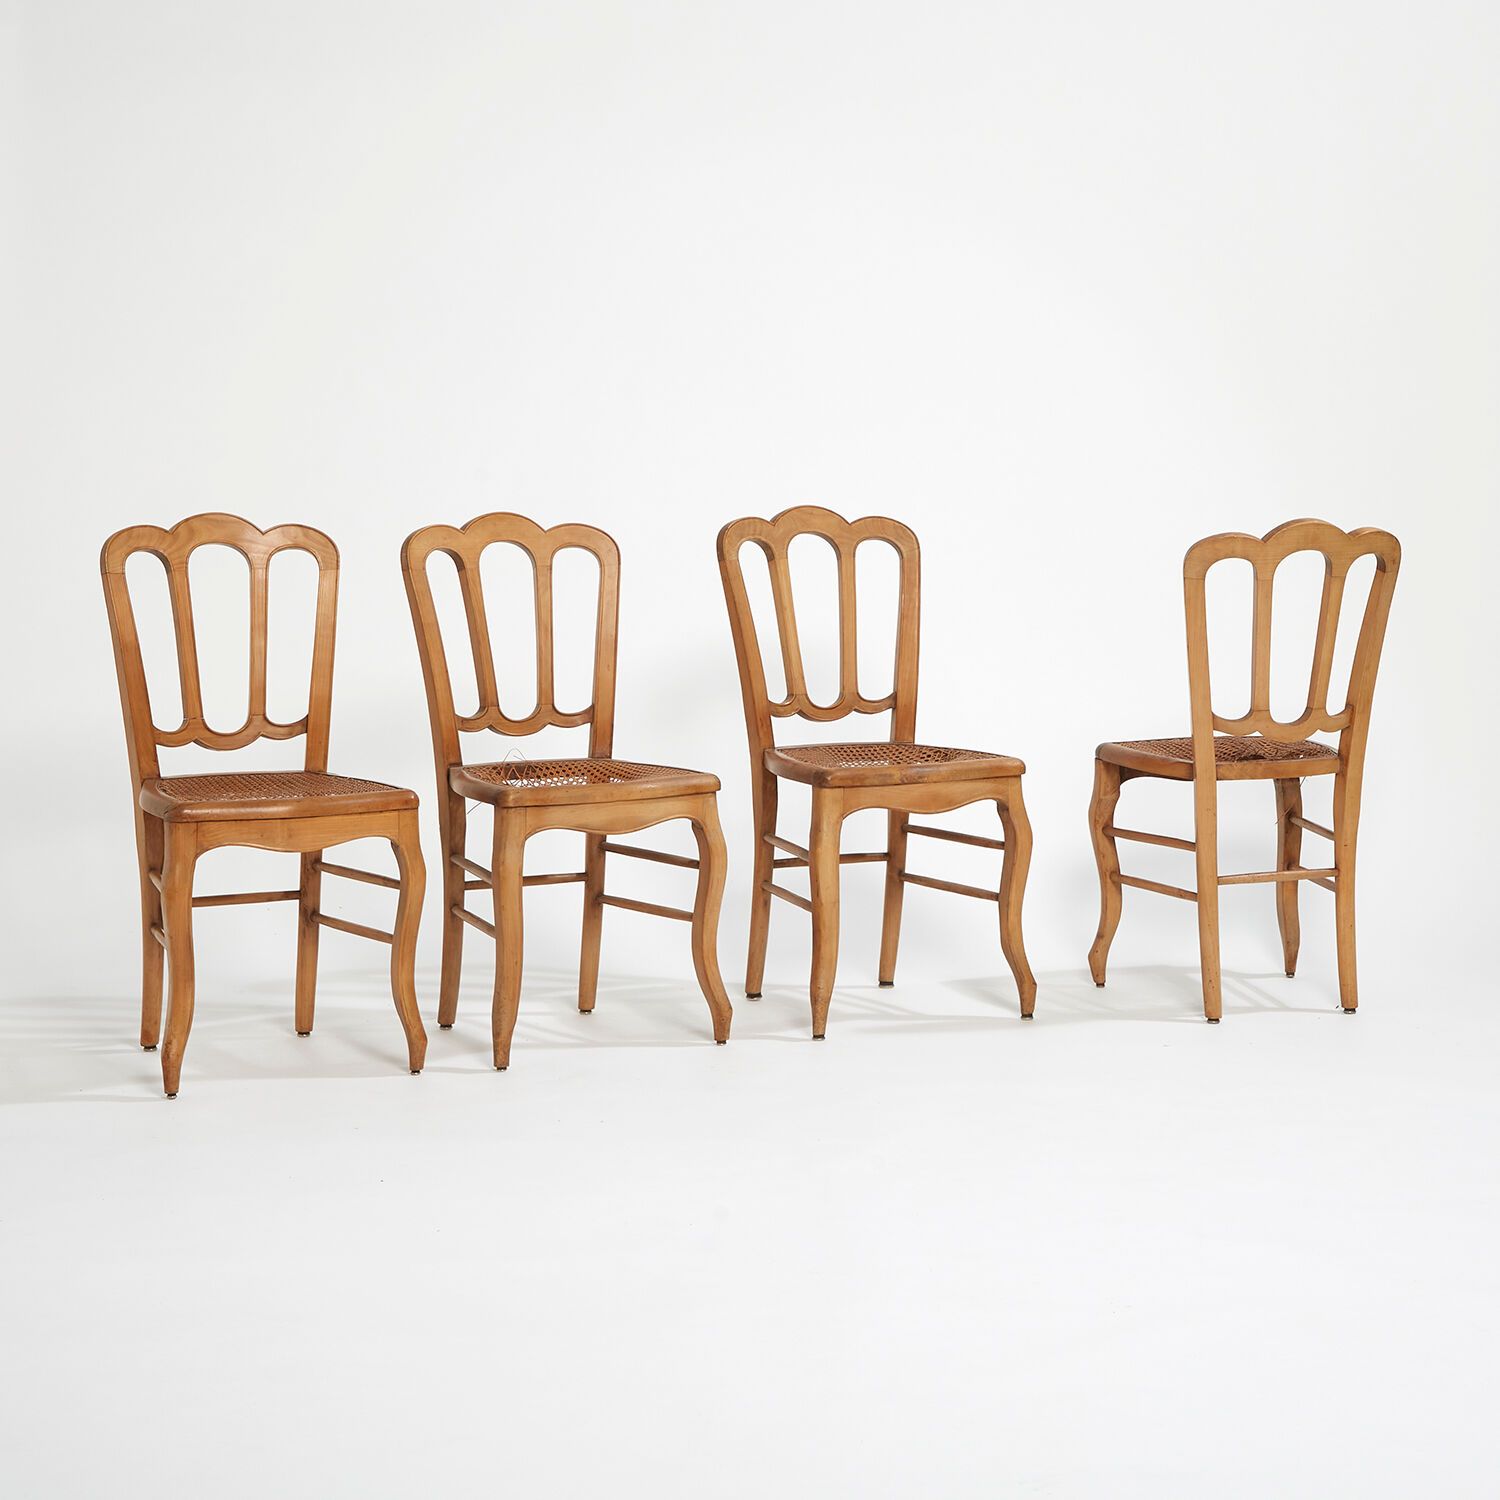 XX SIÈCLE SIGLO XX
Conjunto de 6 sillas de madera de fresno, asientos de mimbre.&hellip;